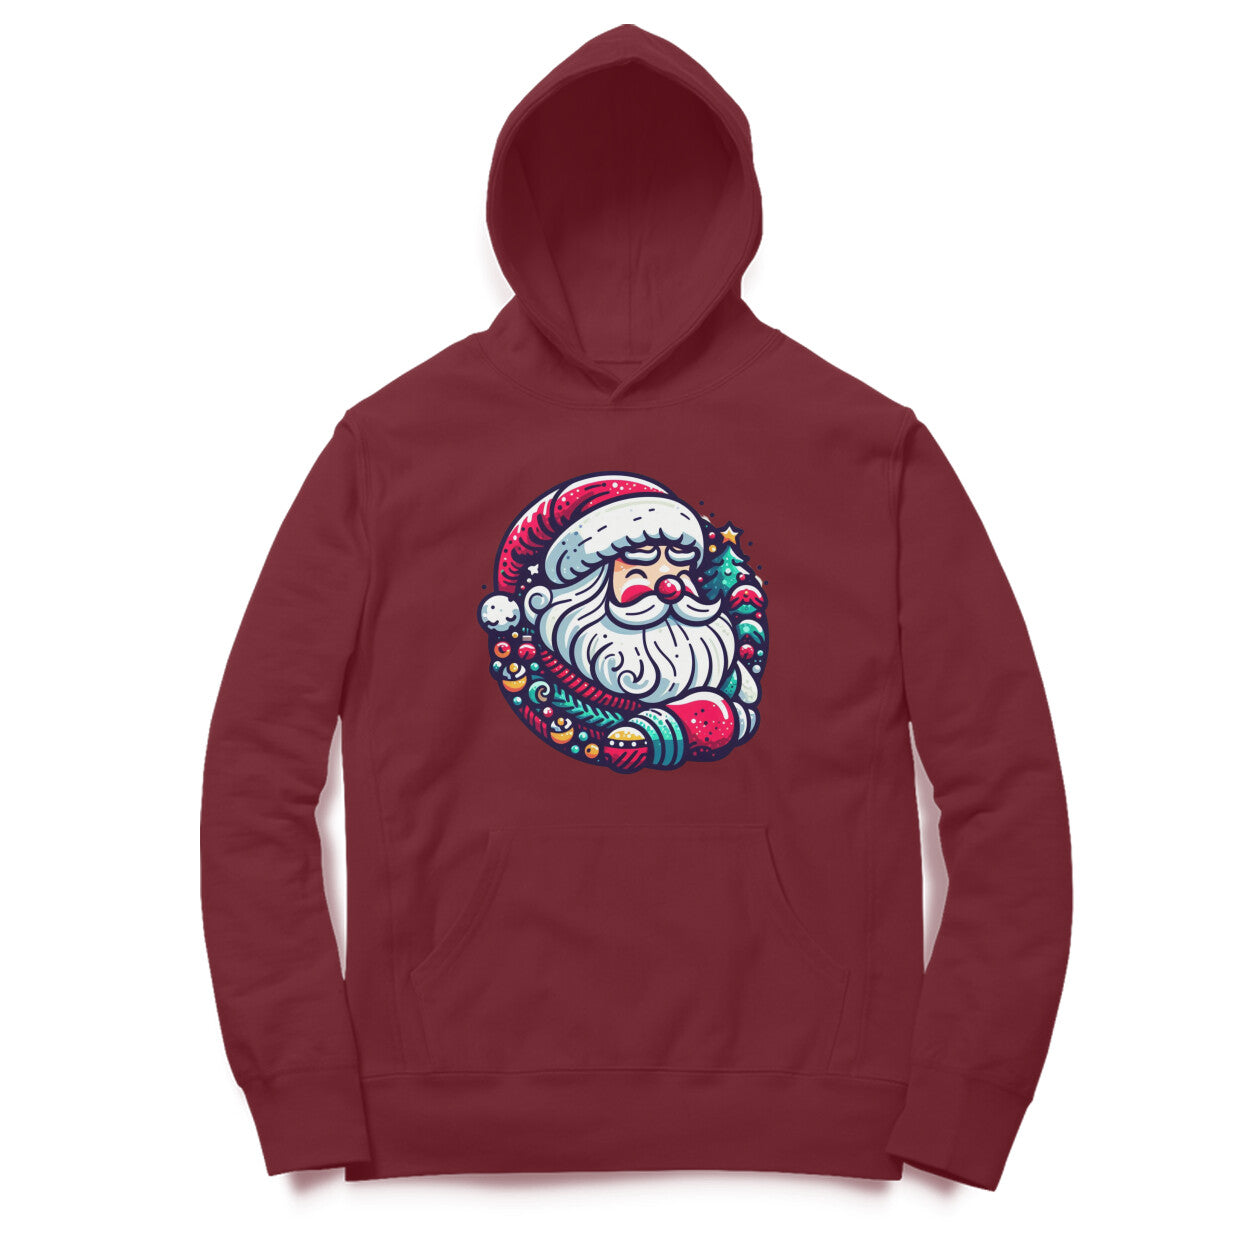 Winter Wonderland Santa Men's Printed Hoodie - Festive Comfort